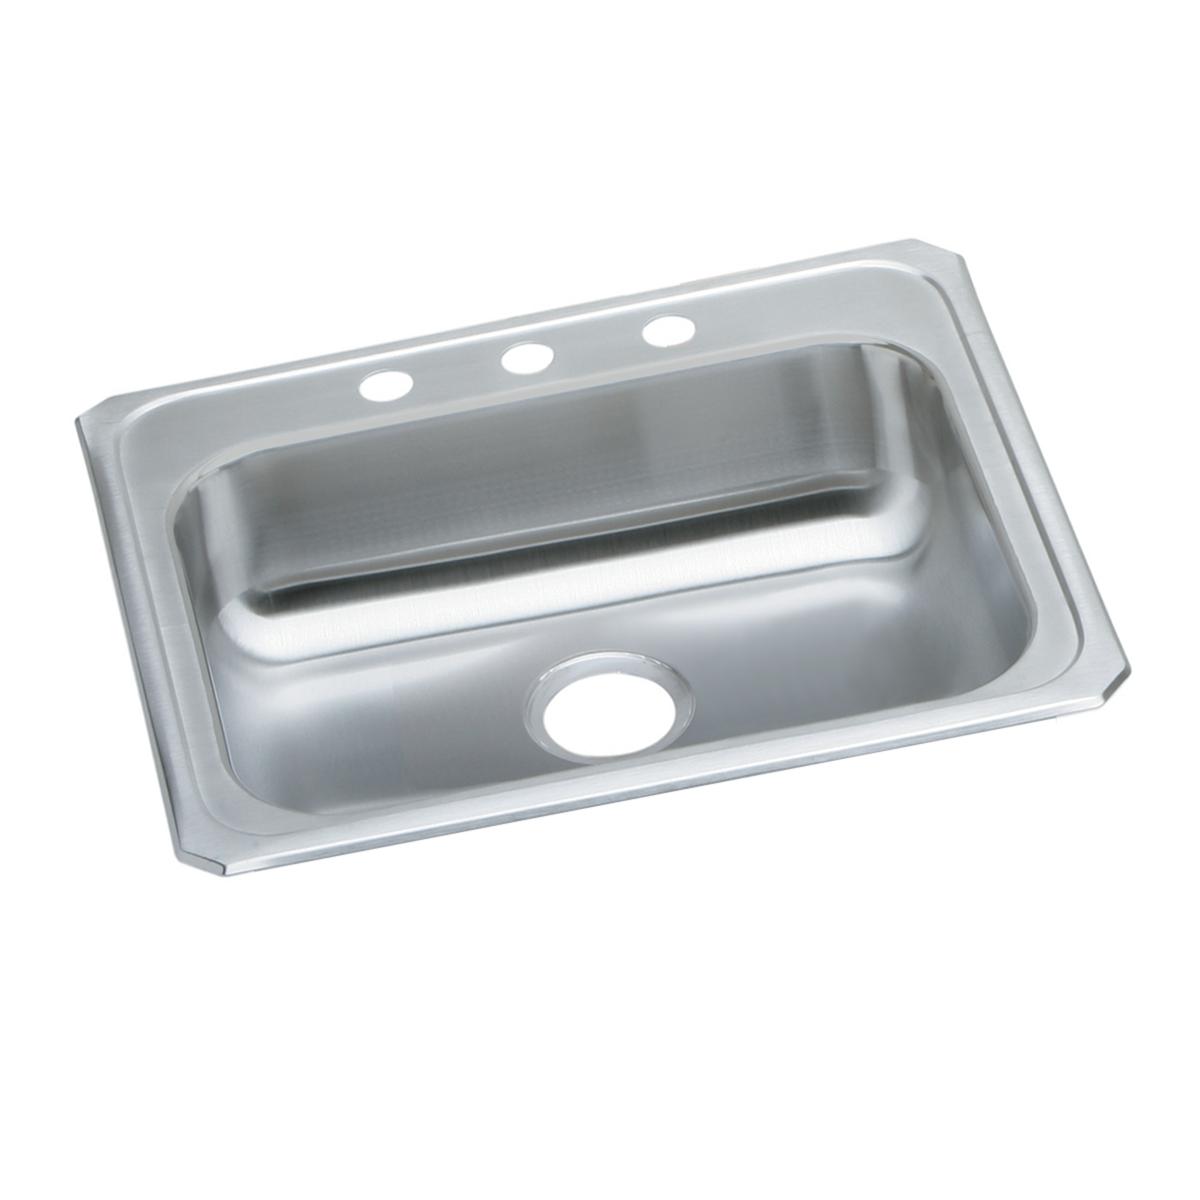 Elkay Stainless Steel Single Bowl Drop-in Sink 1255529